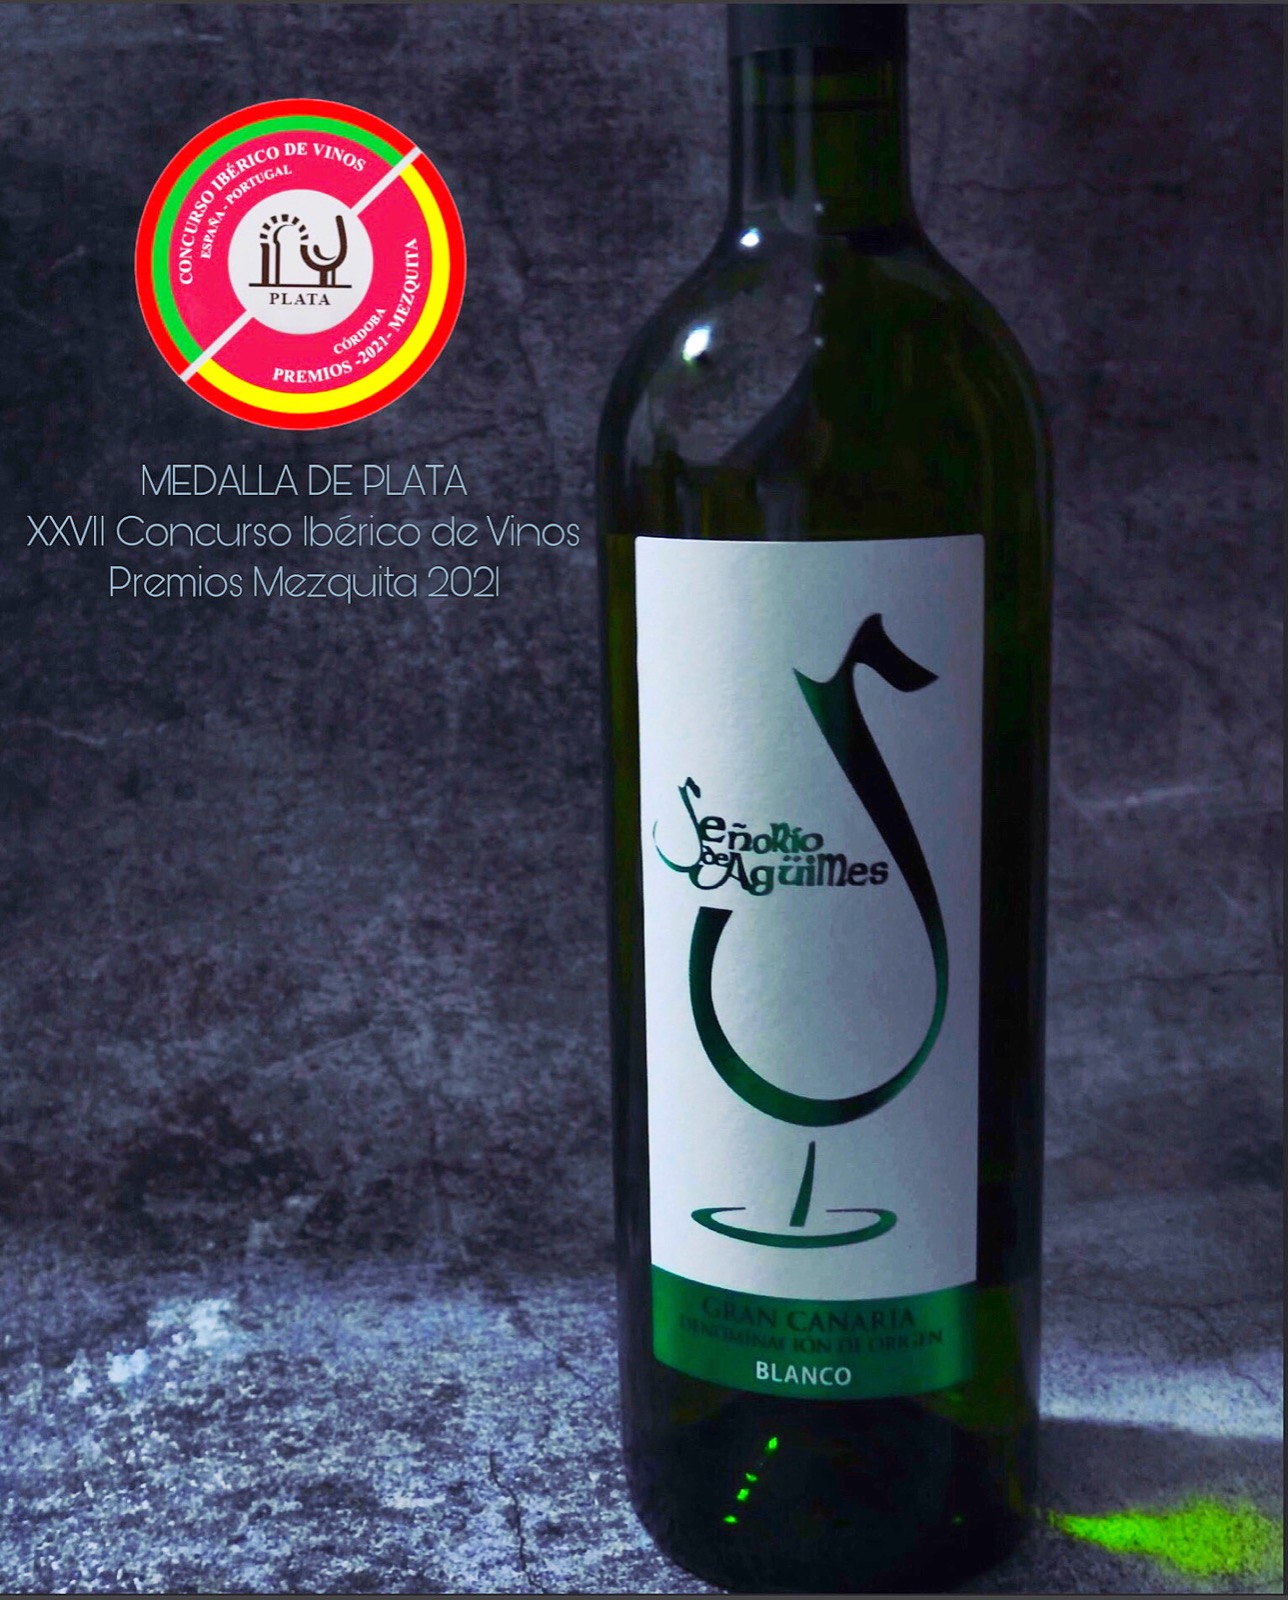 El vino Señorío de Agüimes obtiene una medalla de plata en Concurso de Vinos Mezquita